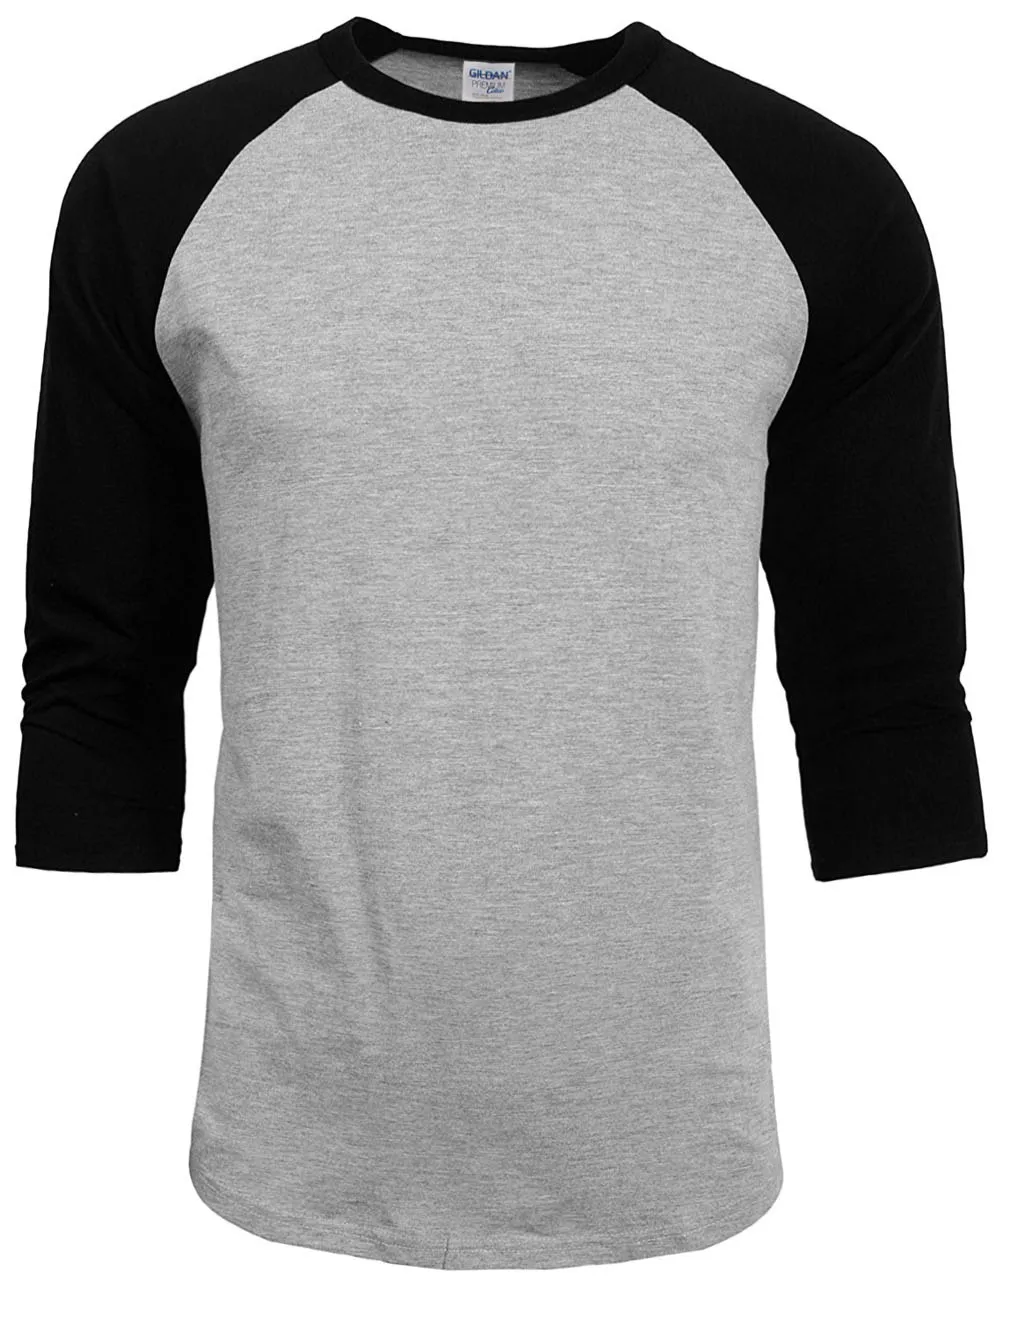 Мужская футболка с круглым вырезом Повседневная из 100% хлопка рукавом 3/4 реглан